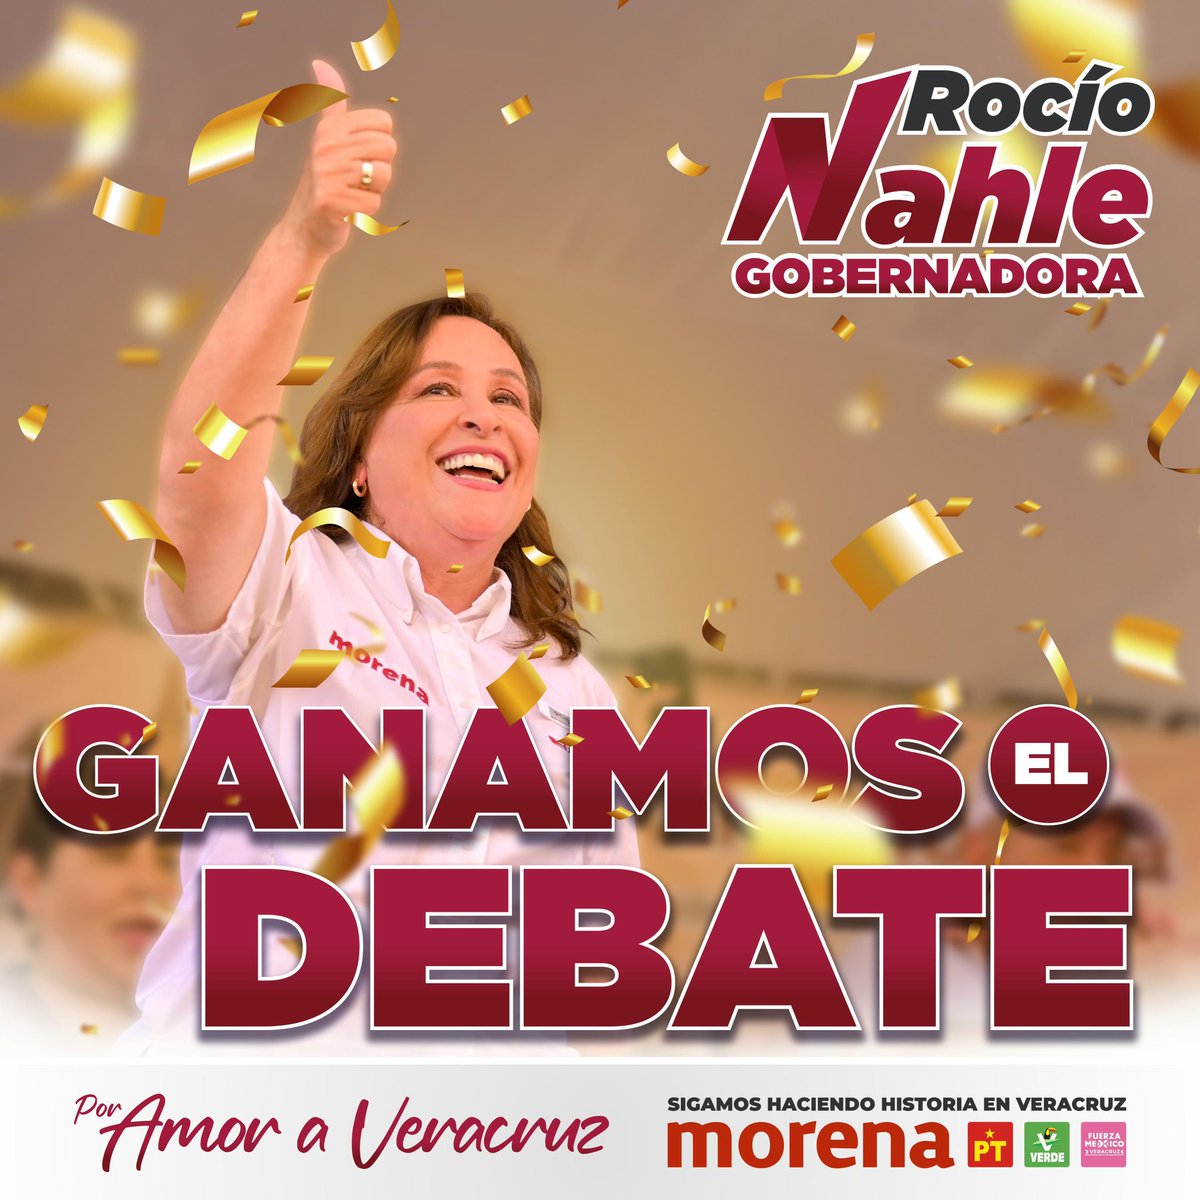 ¡Ganamos el primer debate! Como ganaré la gubernatura de Veracruz el próximo 2 de junio. 

❤️Por amor a #Veracruz❤️

#RocíoGanaElDebate
#NahleGobernadora #YoVotoRocío